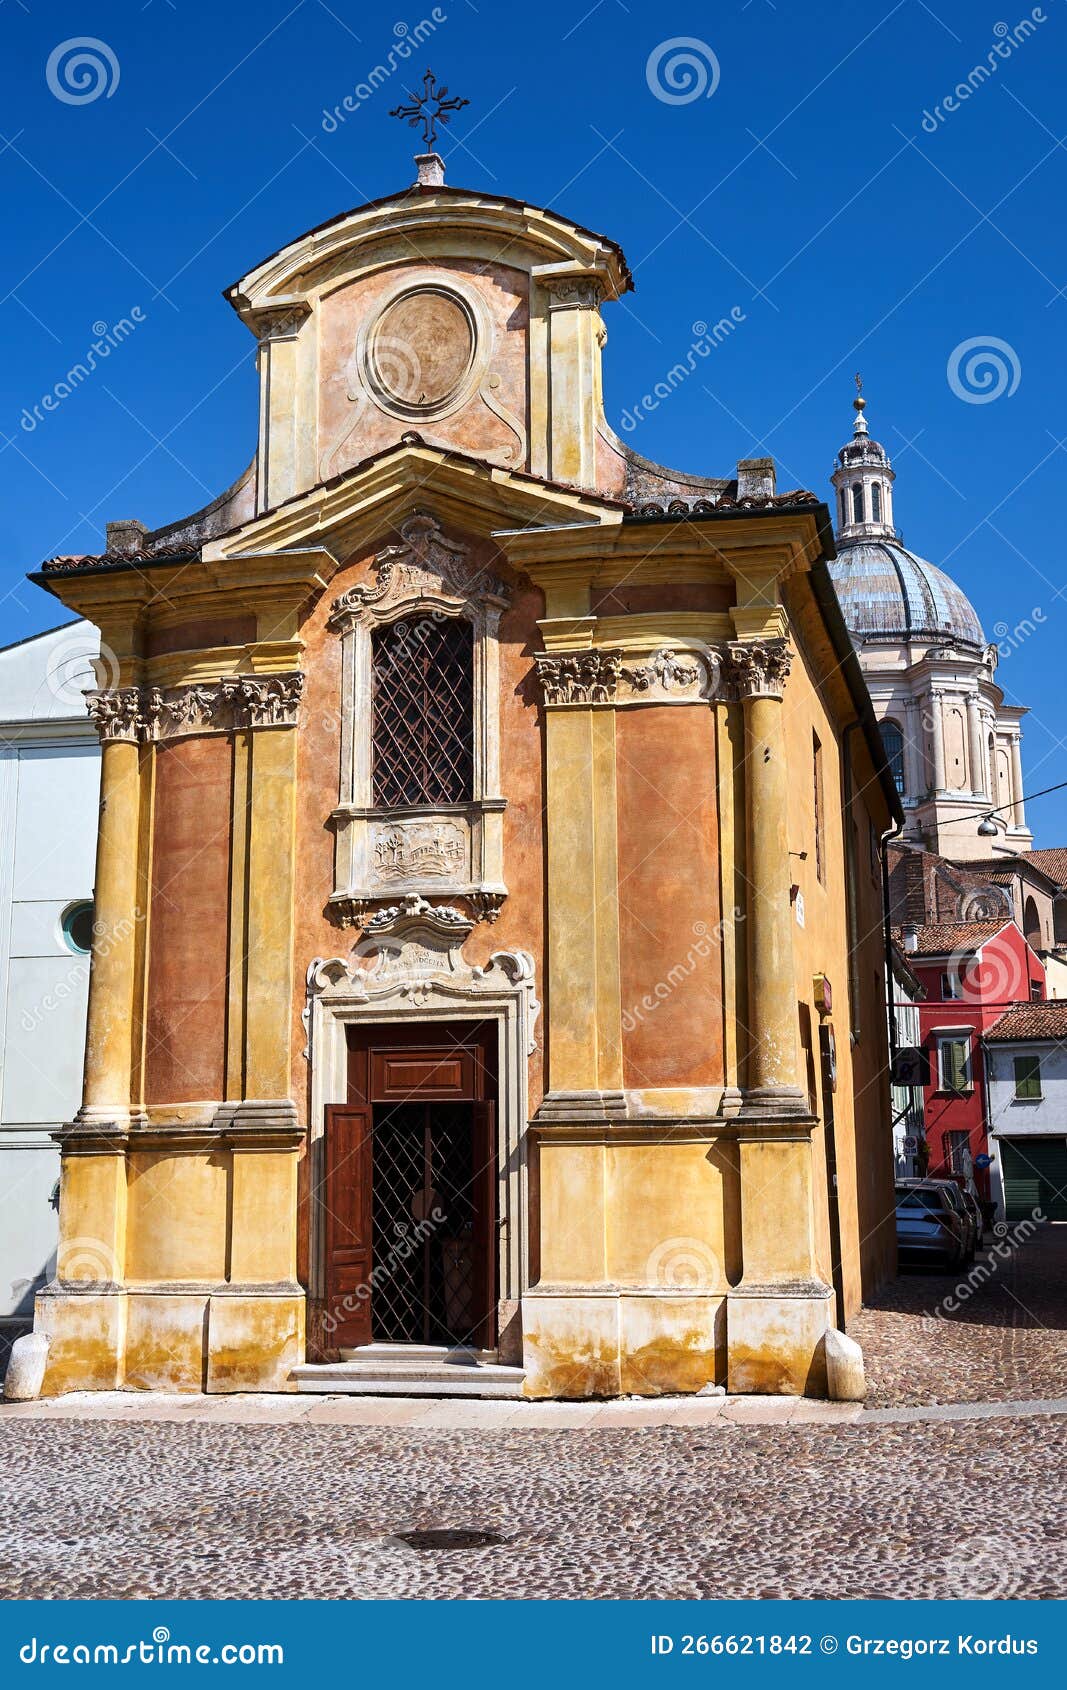 the facade of the historic baroque church madonna del terremoto in the city of mantua